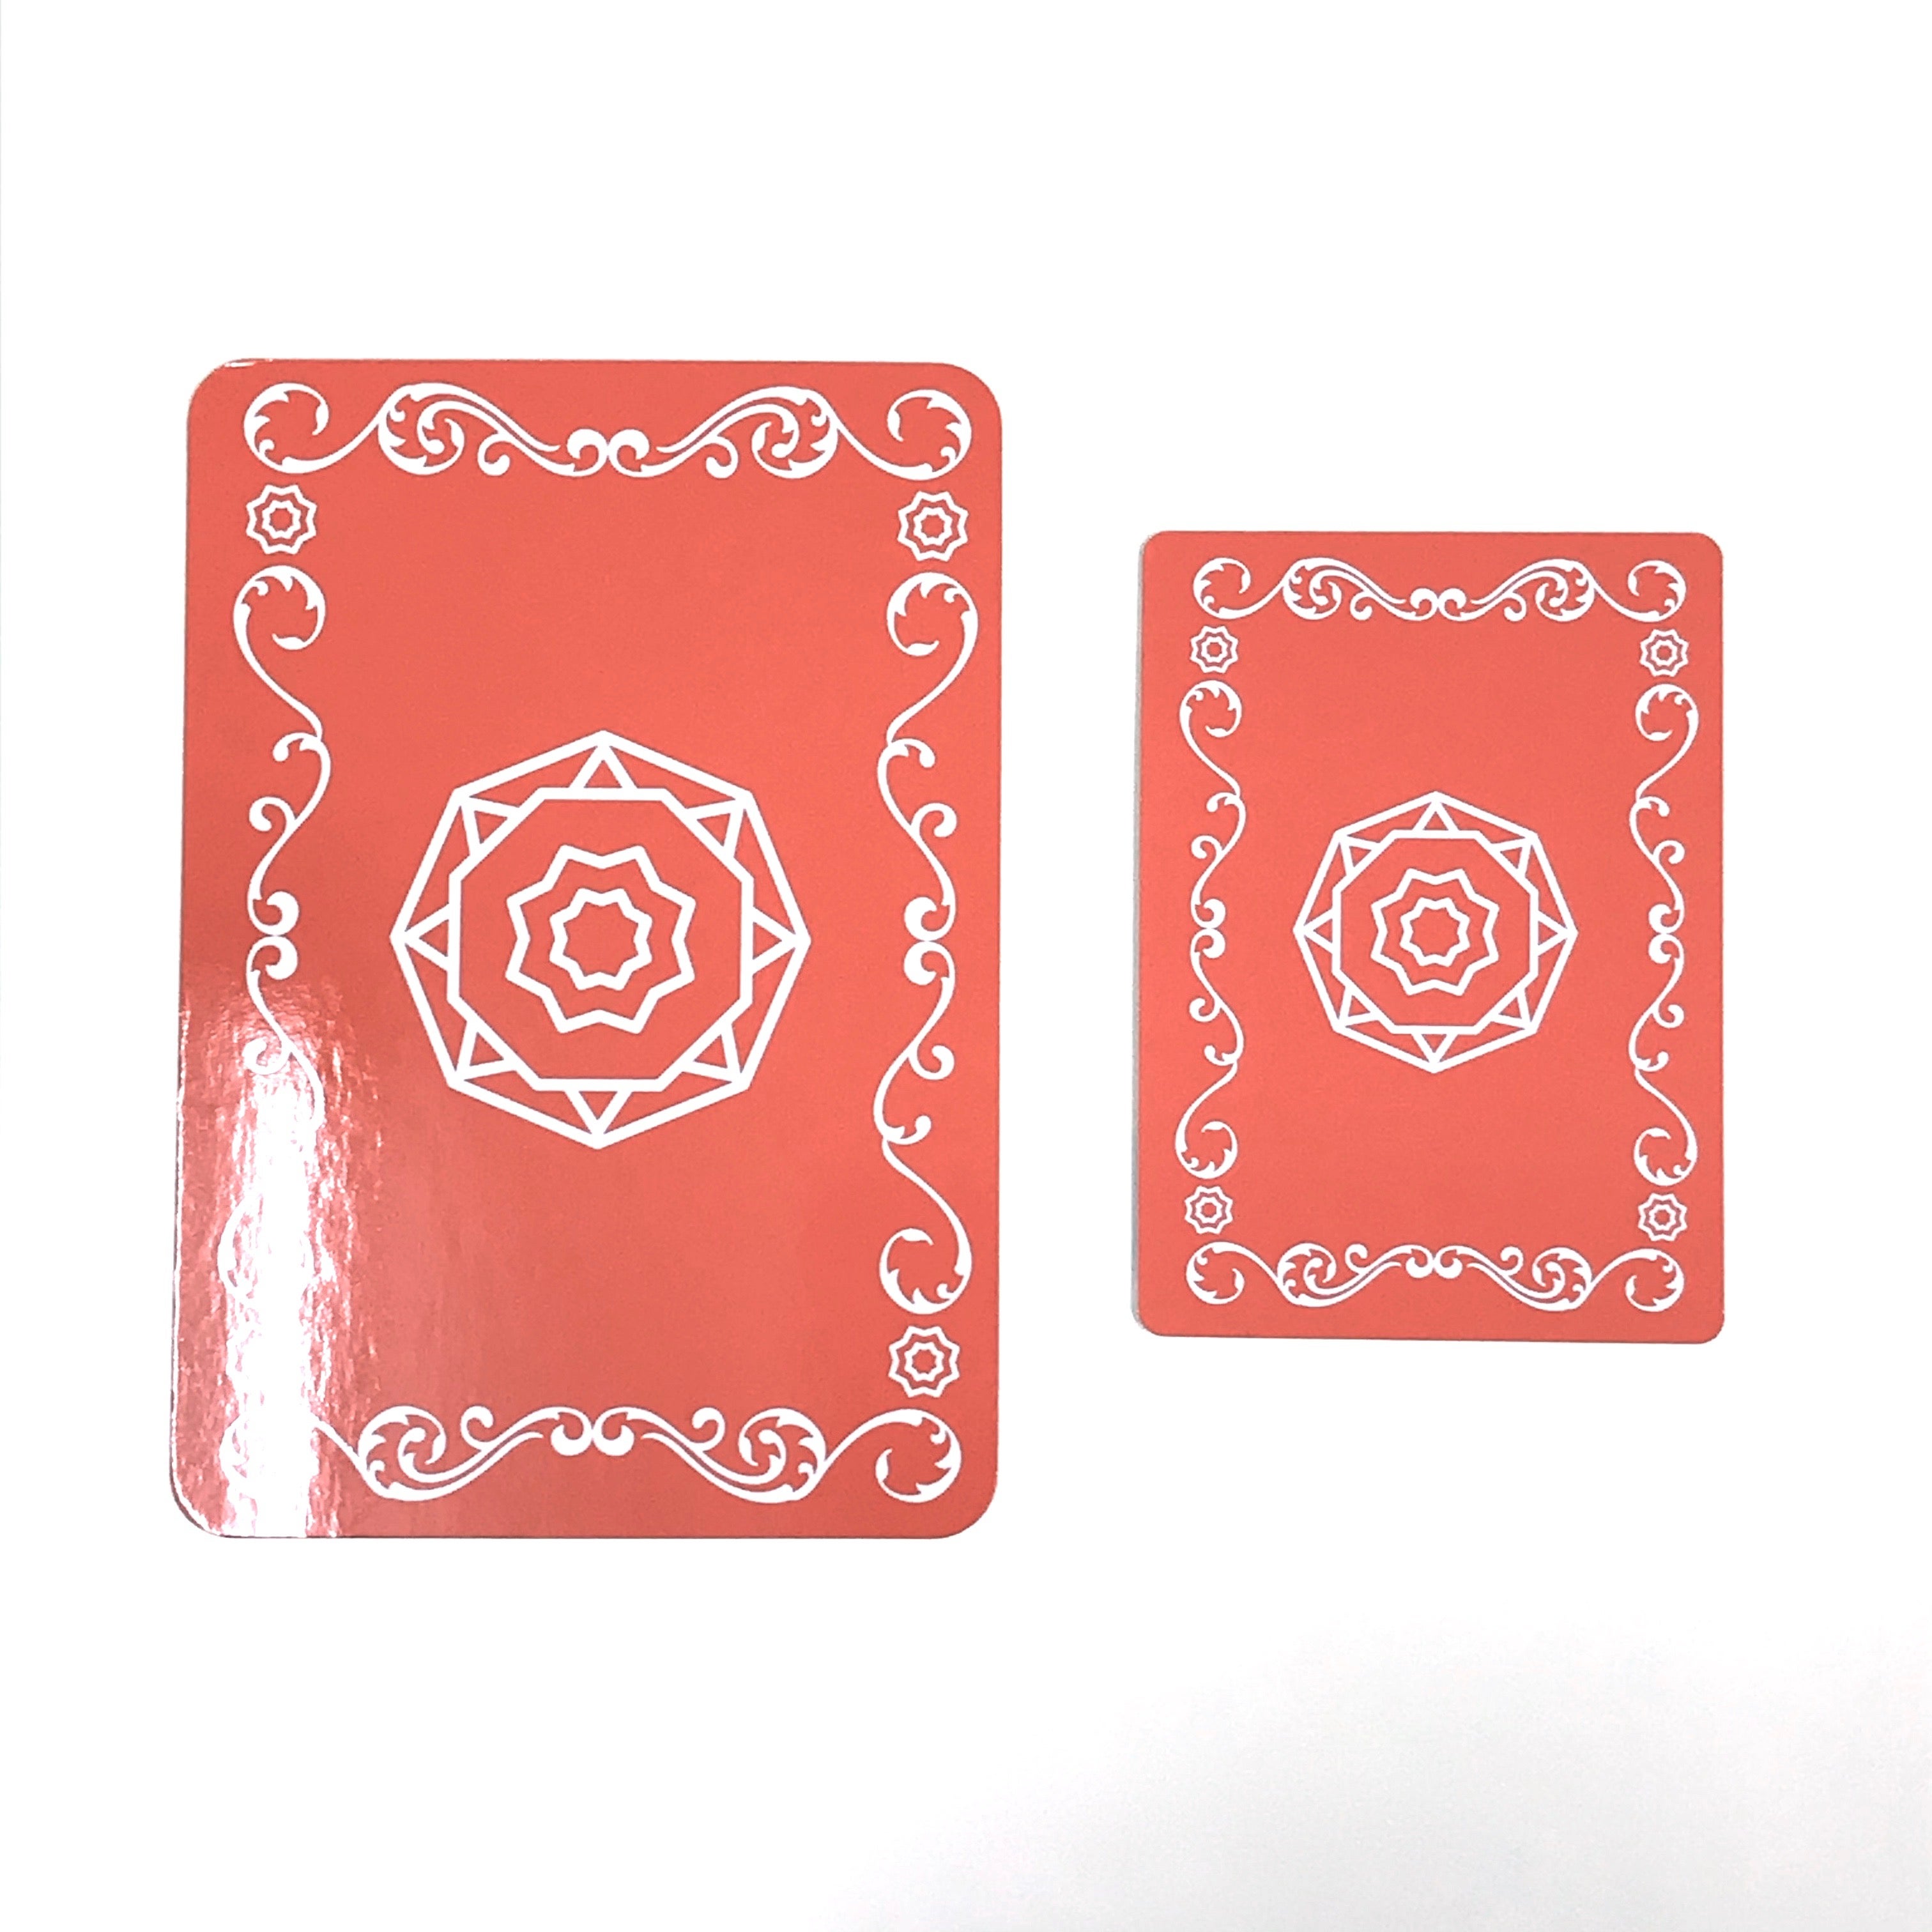 『幸せと豊かさへの扉を開く龍神カード ミニ』発売開始！ | 日本のオラクルカード・タロットカード全集 公式ブログ